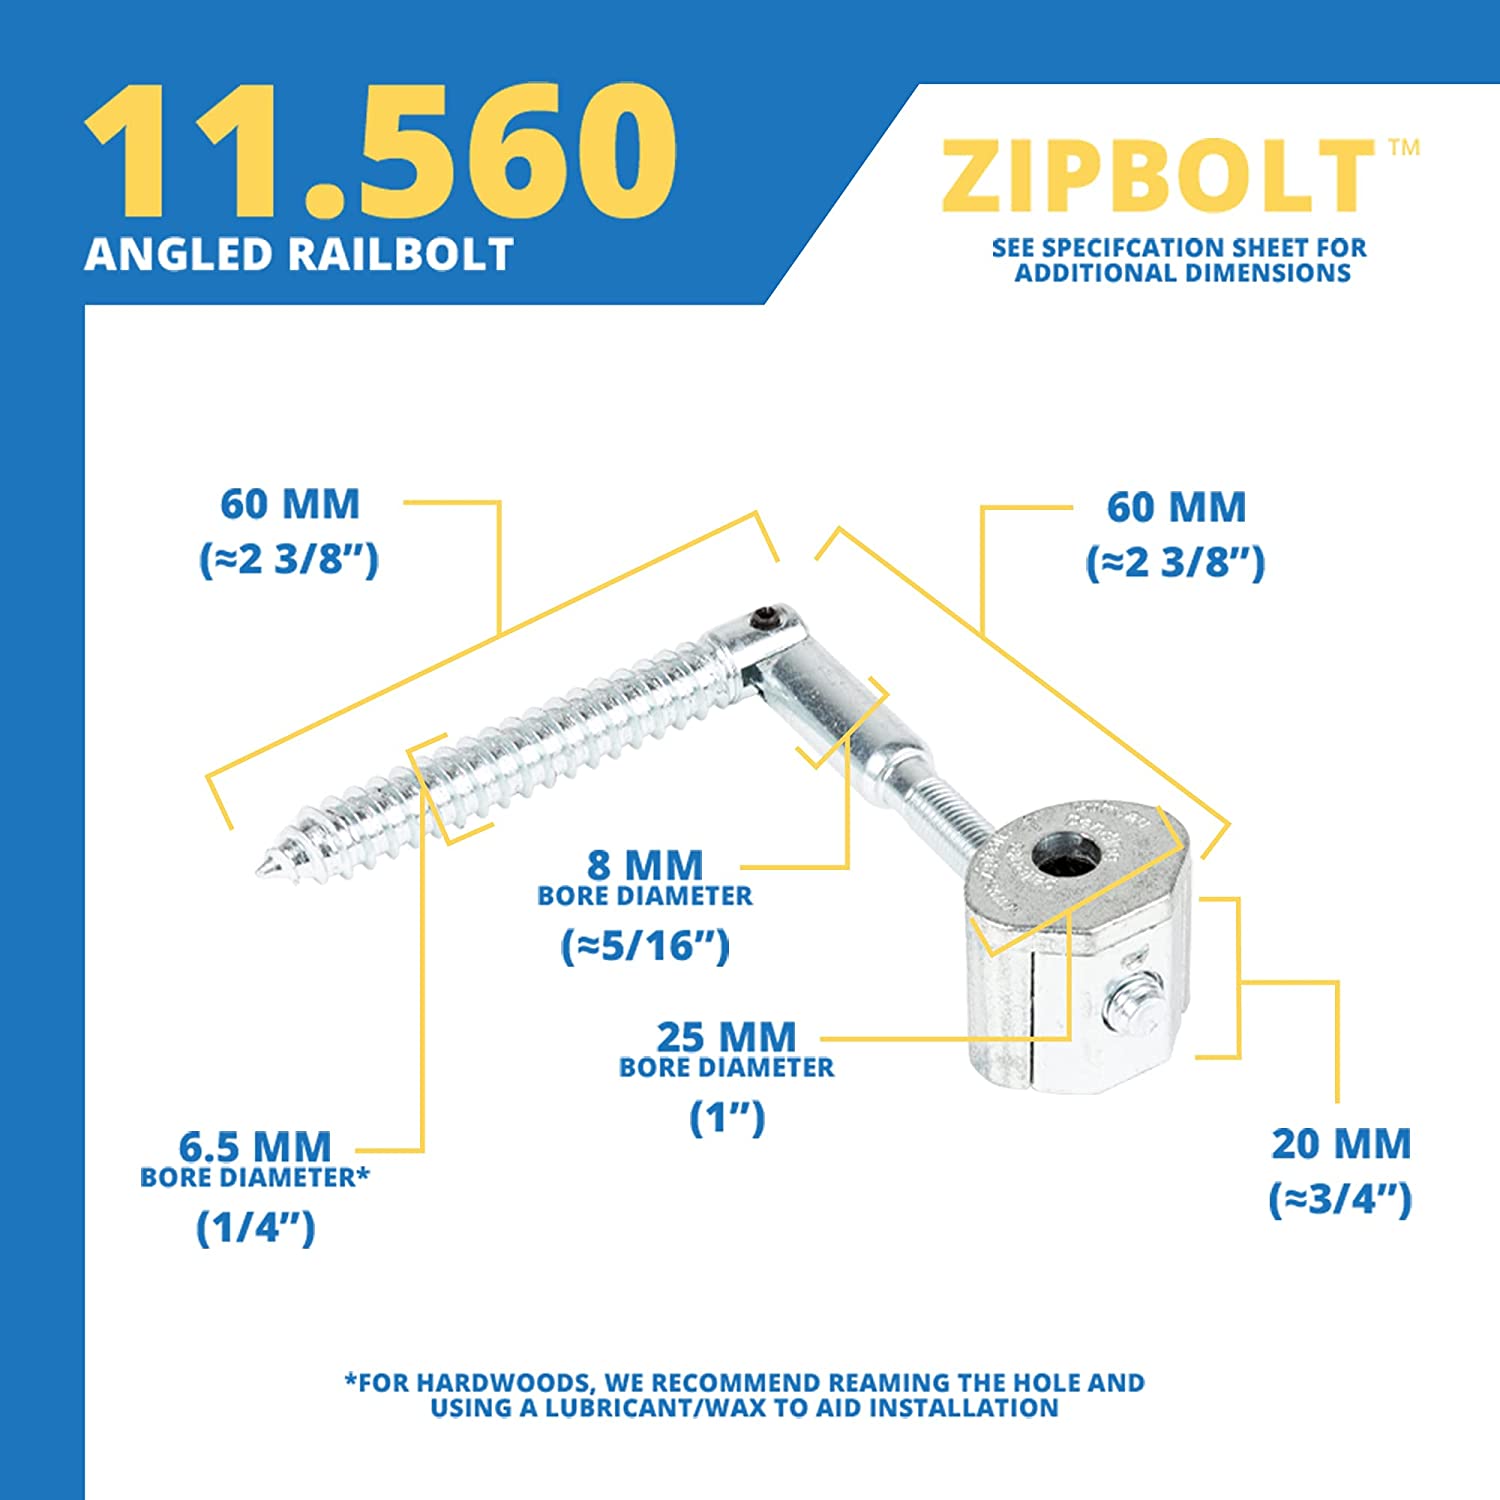 Zipbolt Angled Railbolt